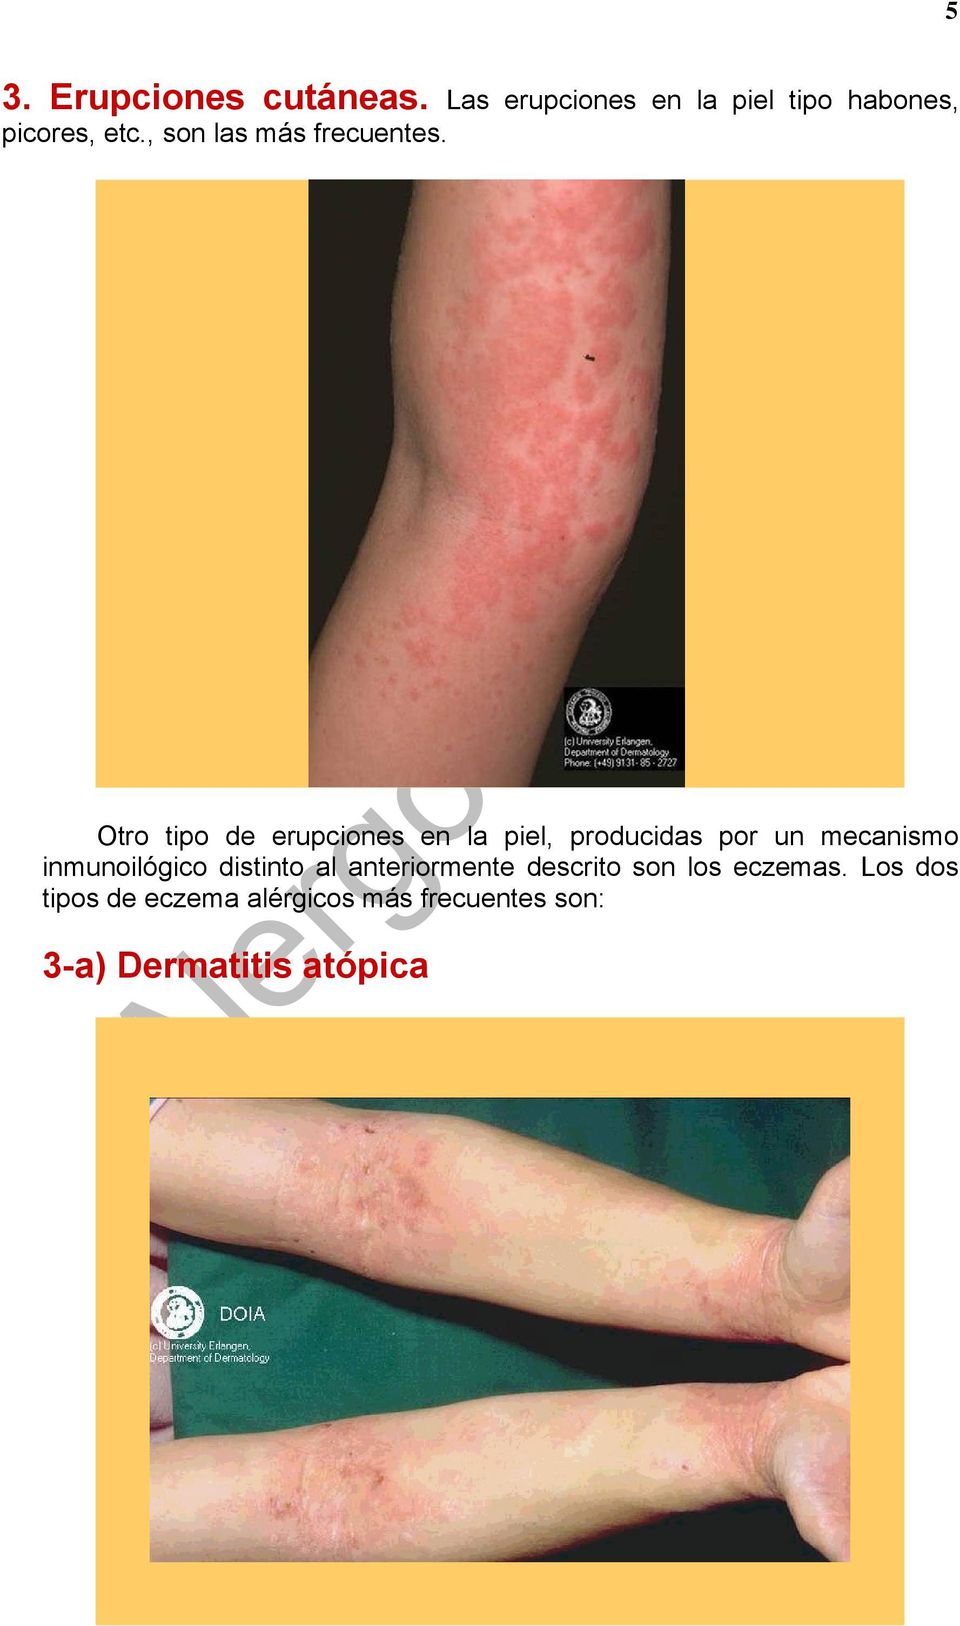 Otro tipo de erupciones en la piel, producidas por un mecanismo inmunoilógico